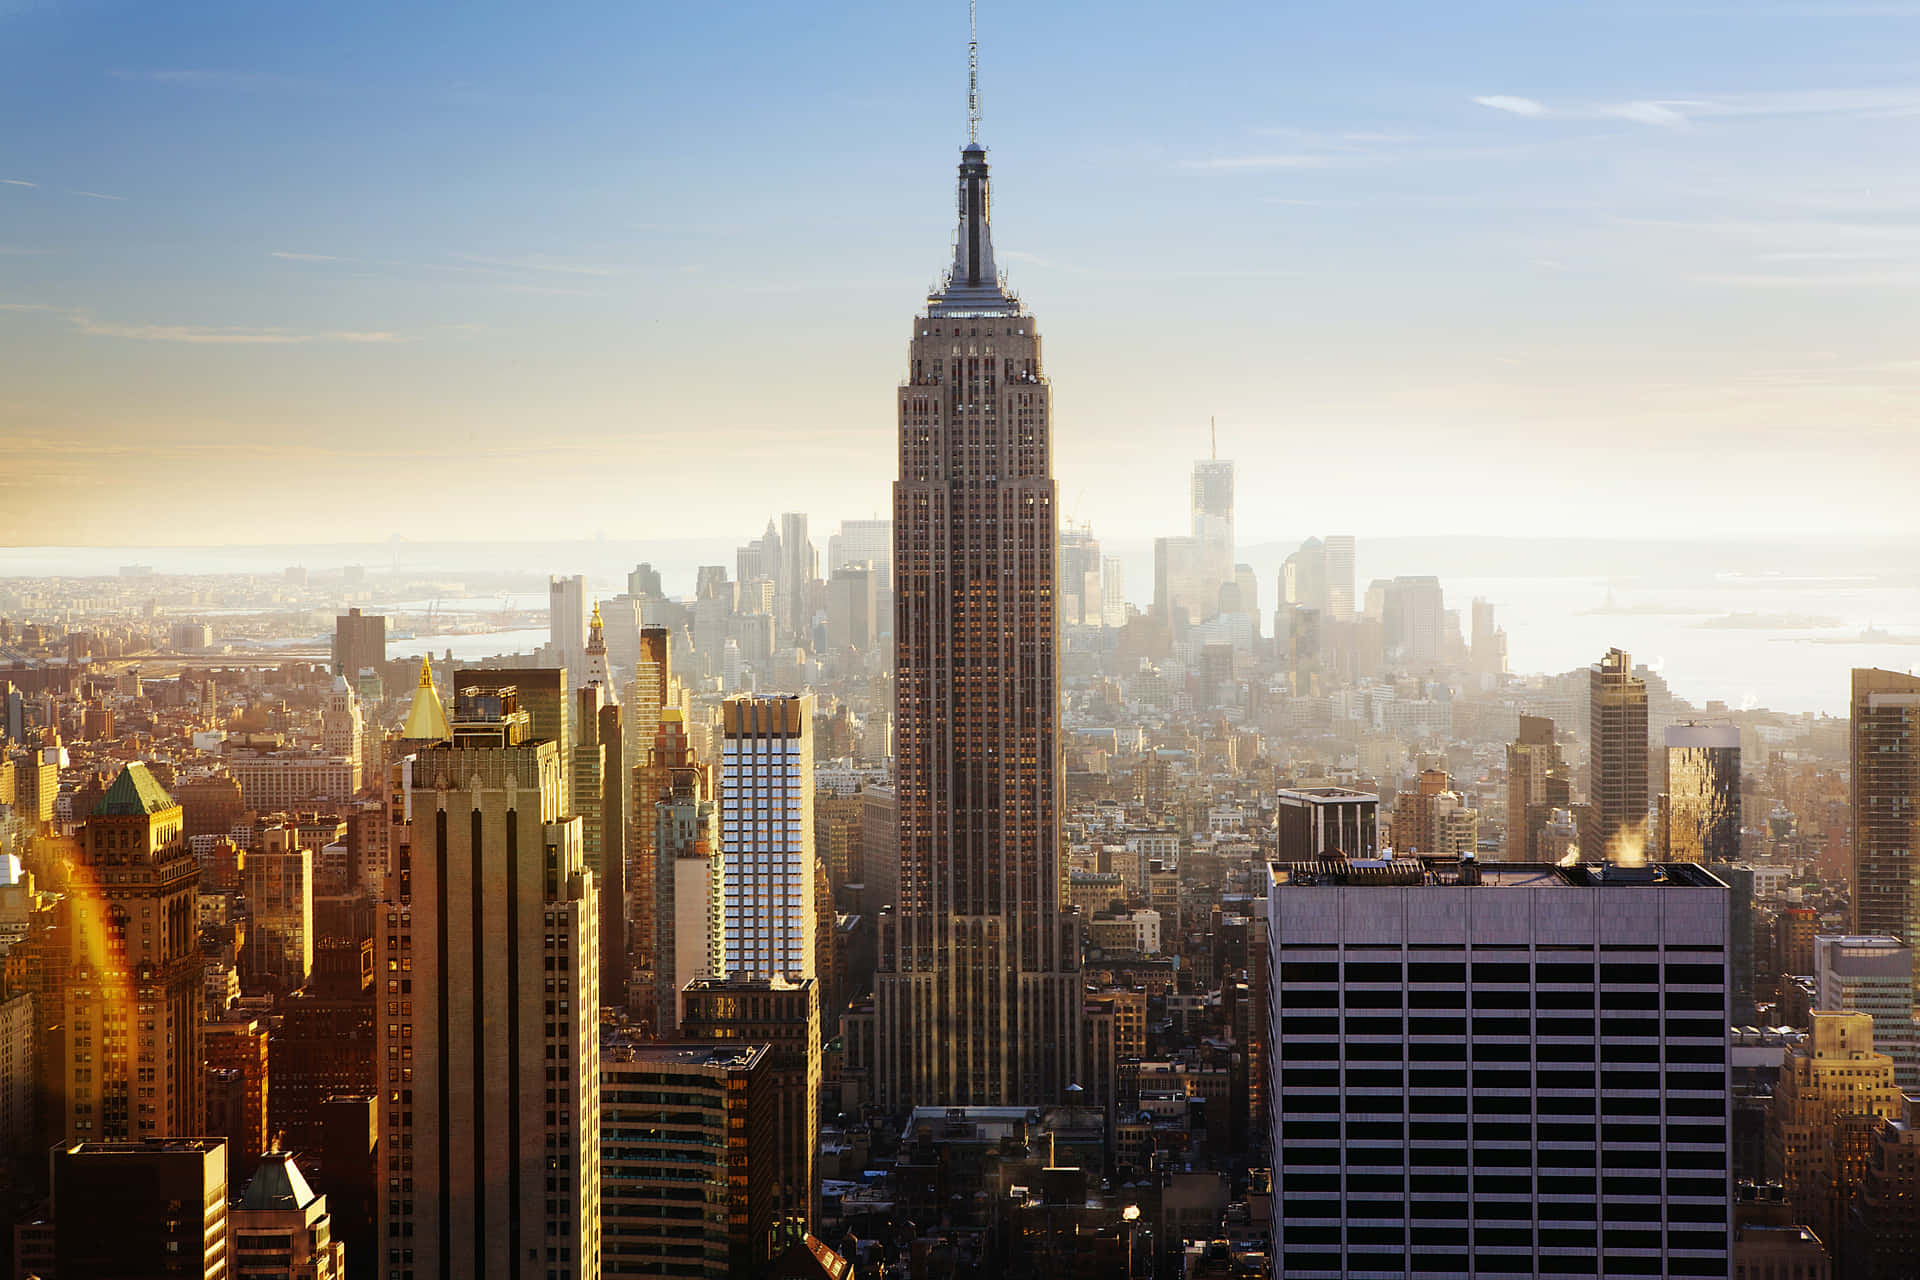 Skylinedi New York City Con L'empire State Building.